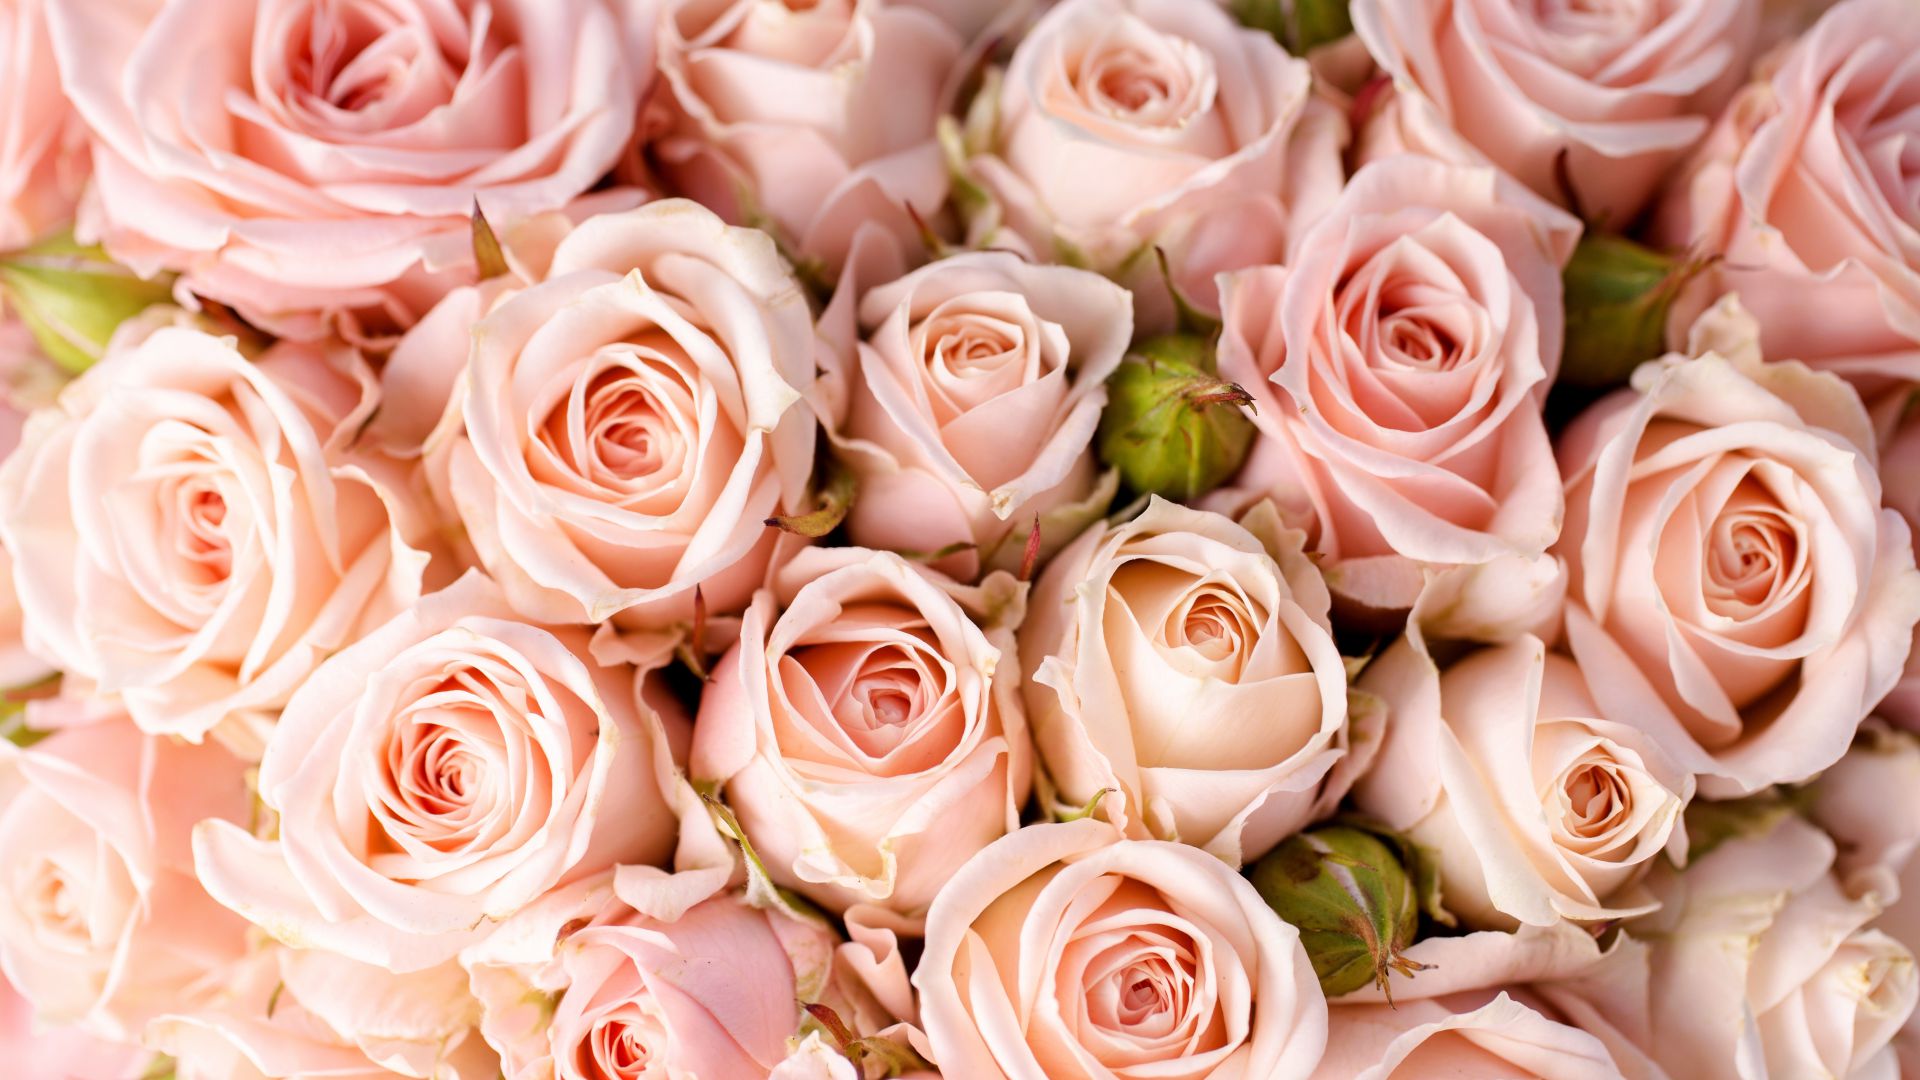 Розы, 5k, 4k, 8k, цветы, розовый, Roses, 5k, 4k wallpaper, 8k, flowers, pink (horizontal)